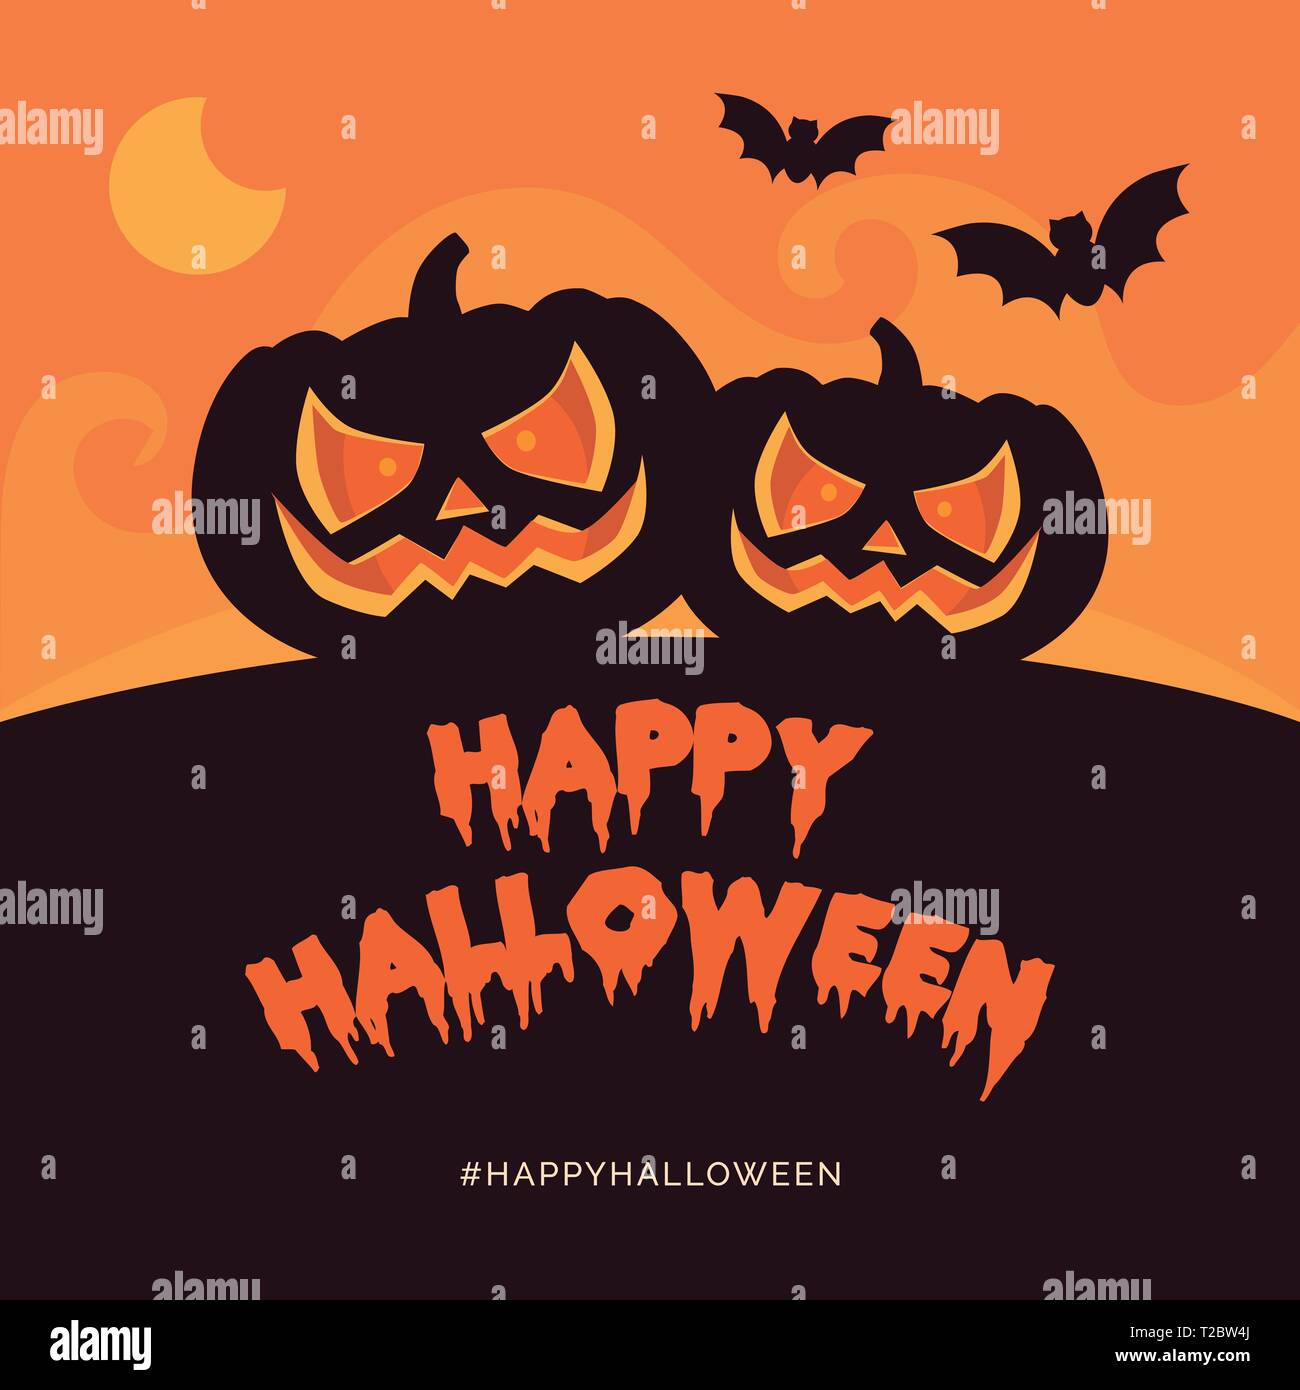 Happy Halloween de cette carte et les médias sociaux avec des citrouilles et des chauves-souris post Illustration de Vecteur